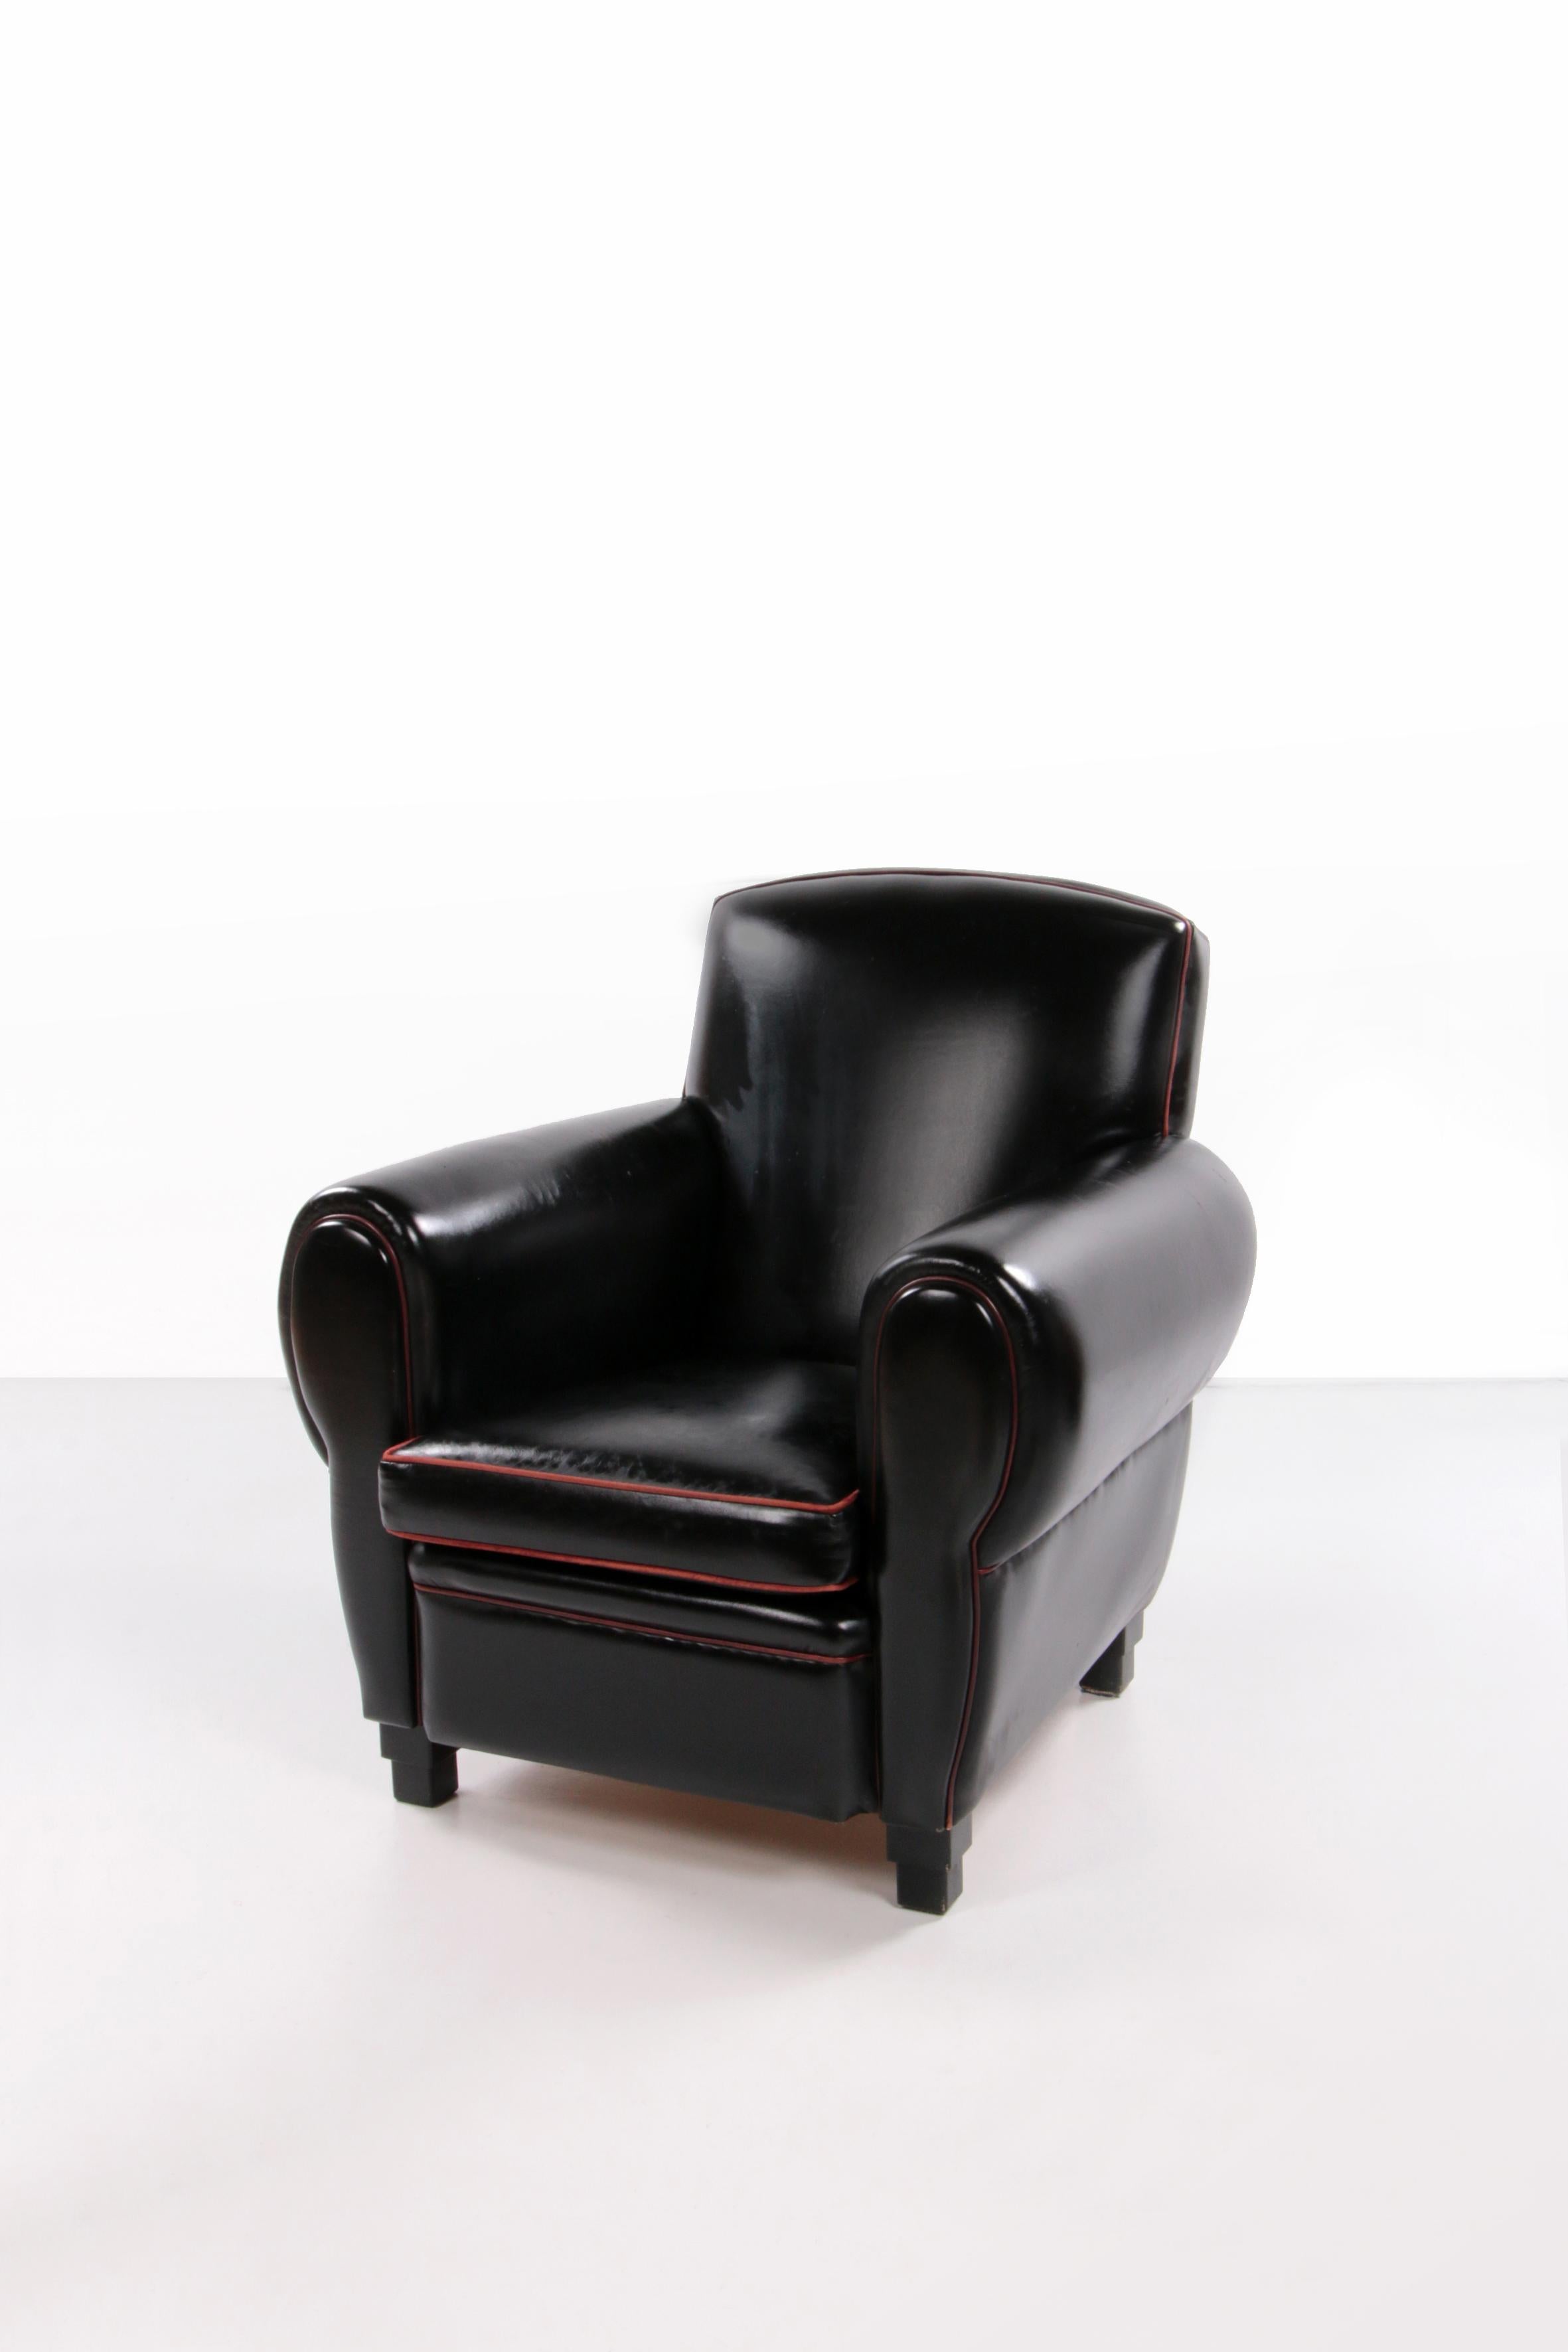 Très confortable et beau fauteuil en cuir de LA Lounge Atelier.


Il s'agit d'un beau fauteuil en cuir de qualité supérieure de la marque LA Lounge Atelier.

Le confort d'assise de cette chaise est parfait, le rembourrage et le cuir sont encore